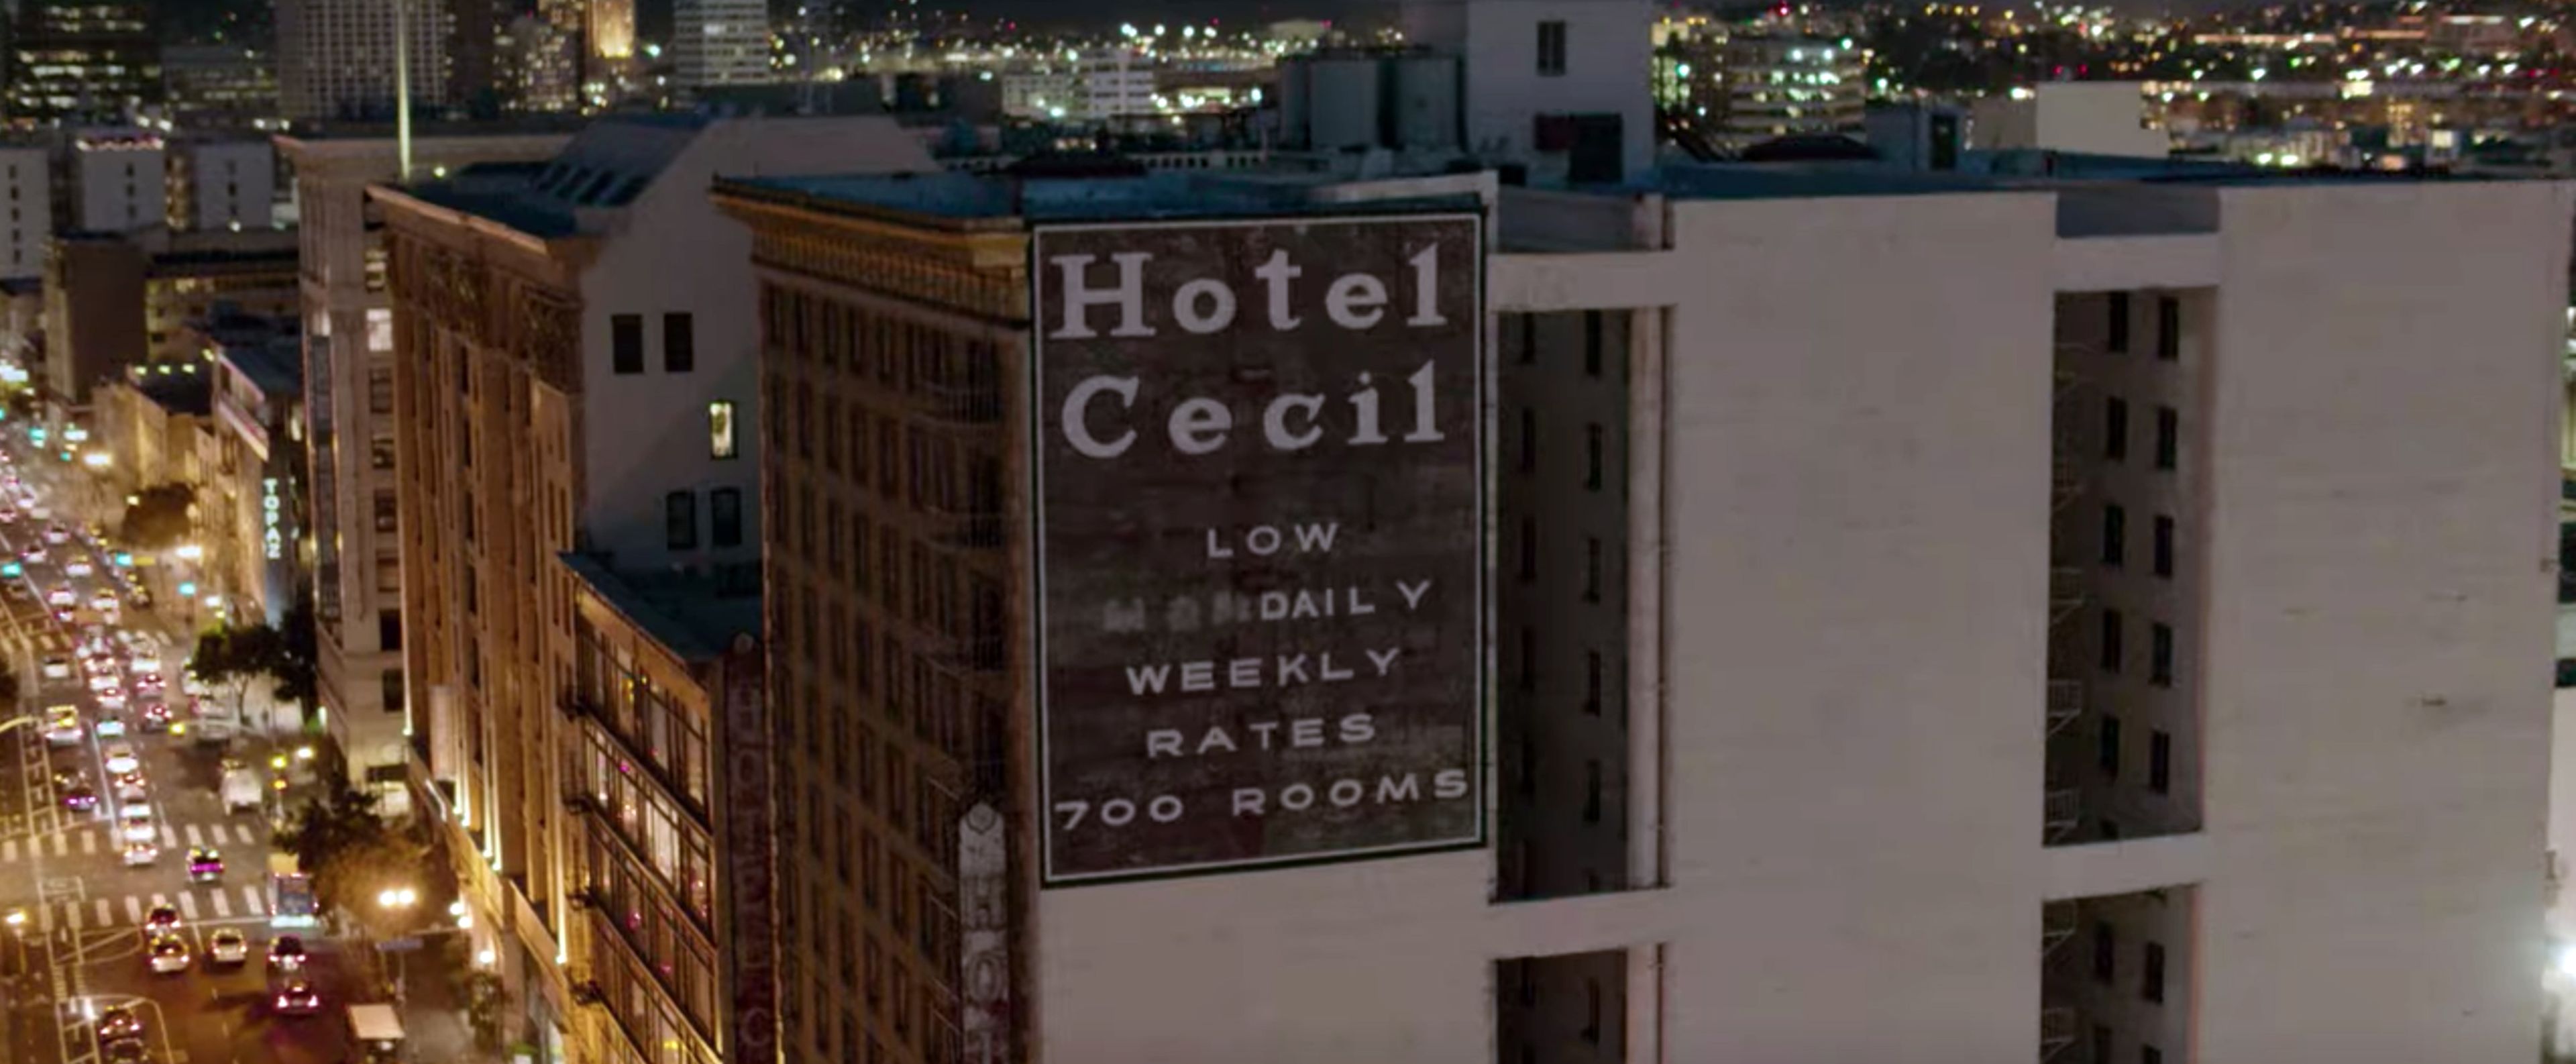 Desaparicion en el hotel Cecil